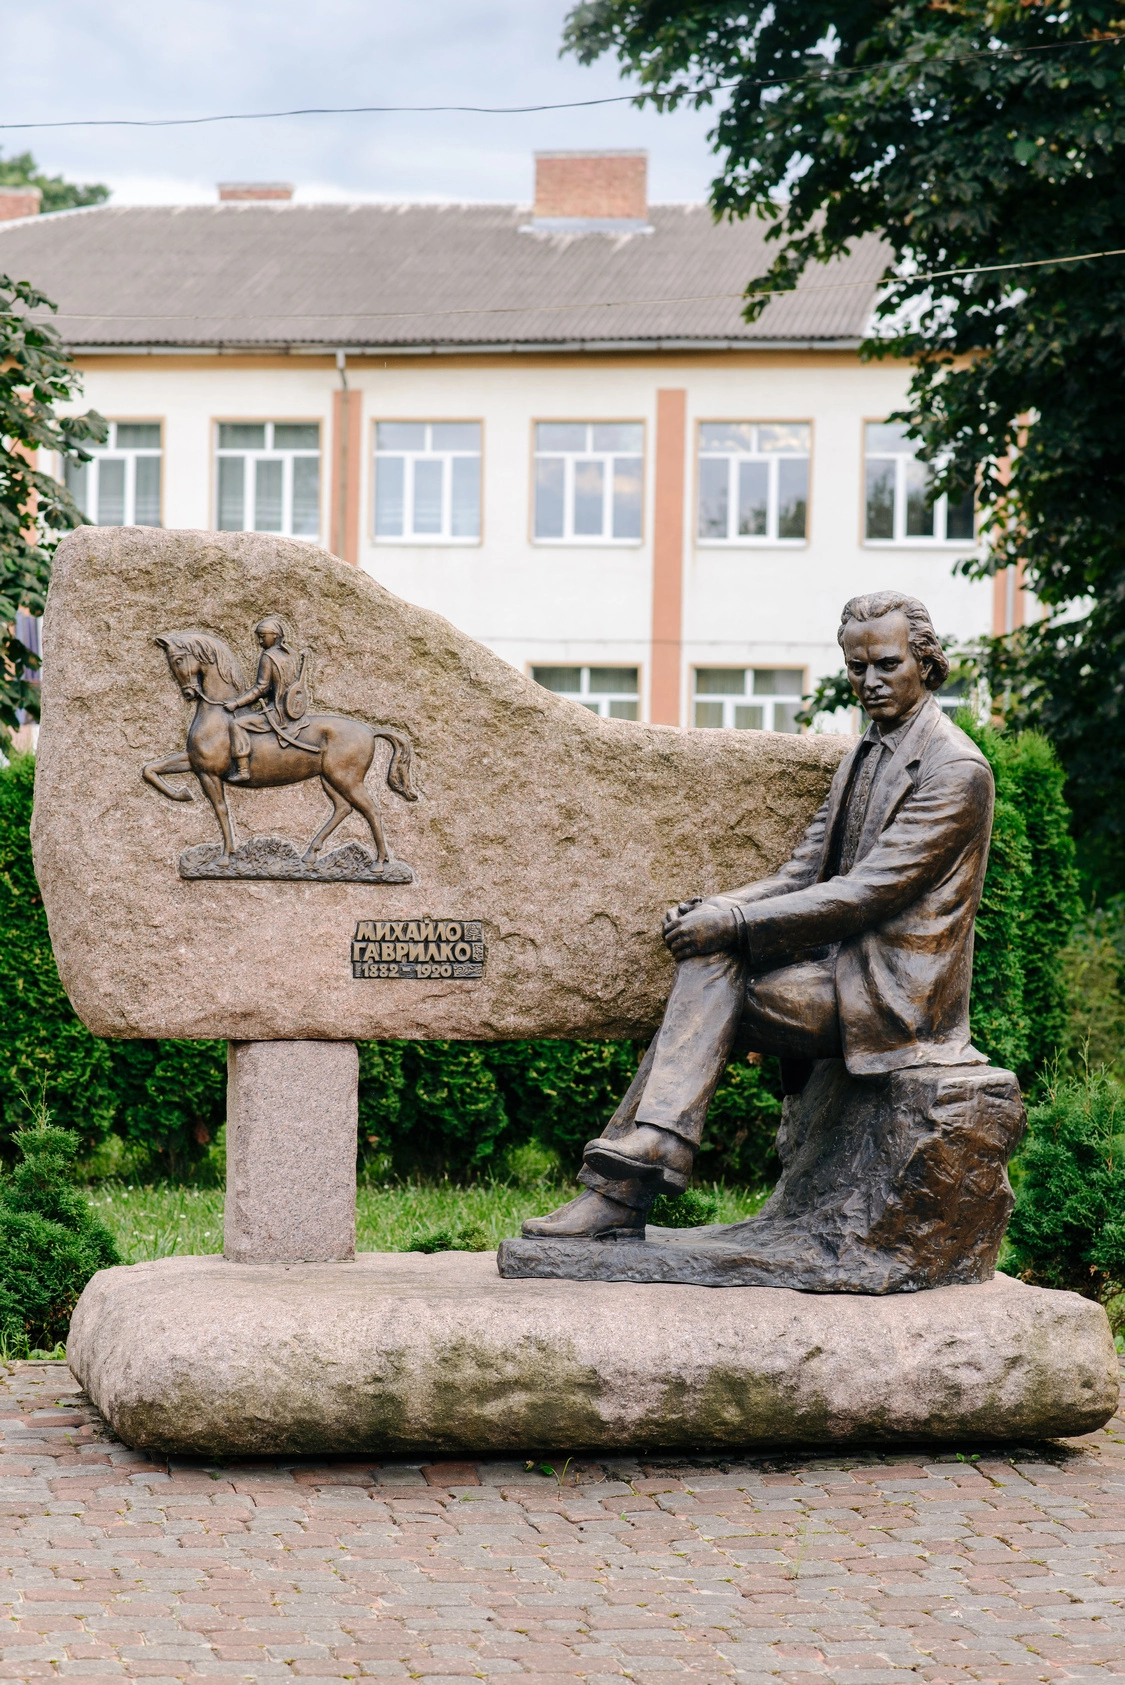 Пам’ятник скульптору Михайлові Гаврилку, митцю-воїну,  творцеві першої шевченкіани.